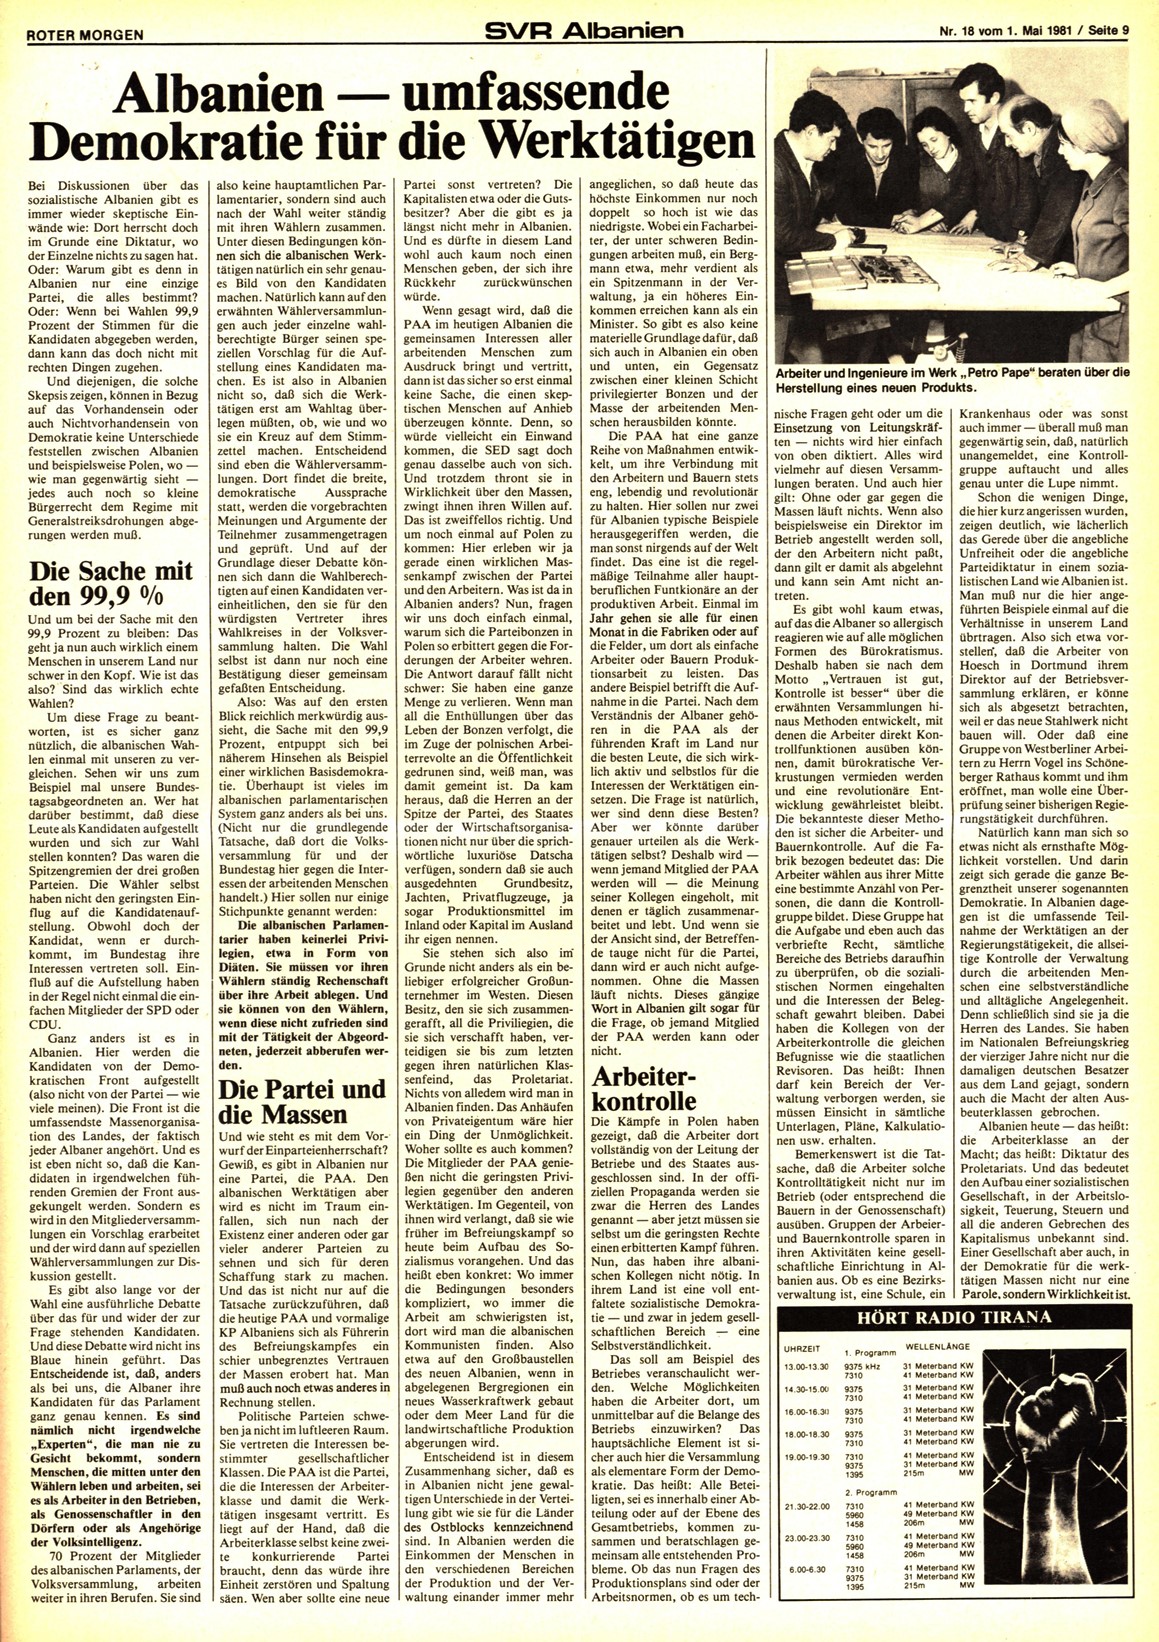 Roter Morgen, 15. Jg., 1. Mai 1981, Nr. 18, Seite 9